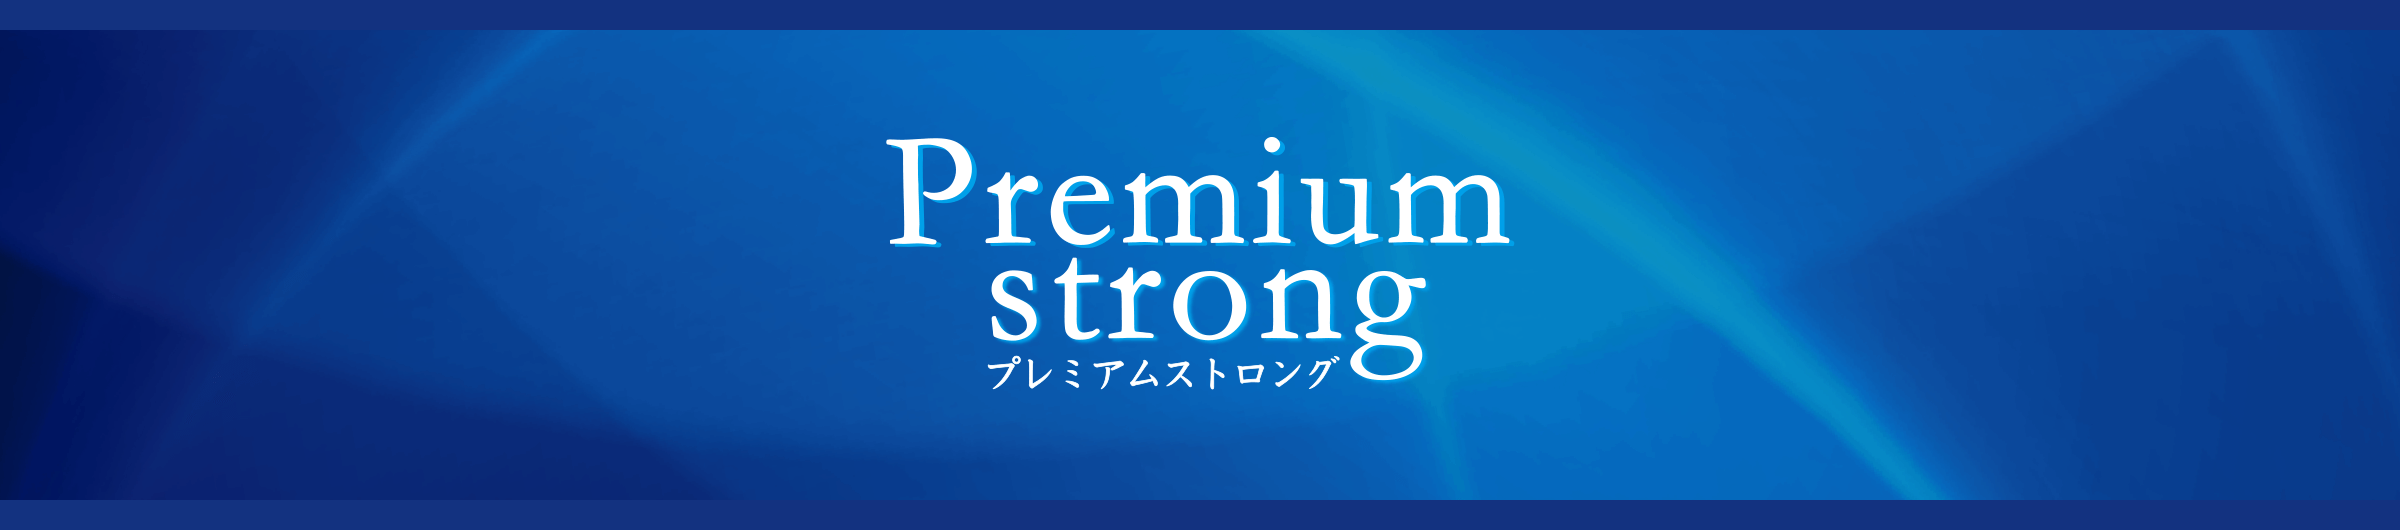 Premium strong プレミアムストロング